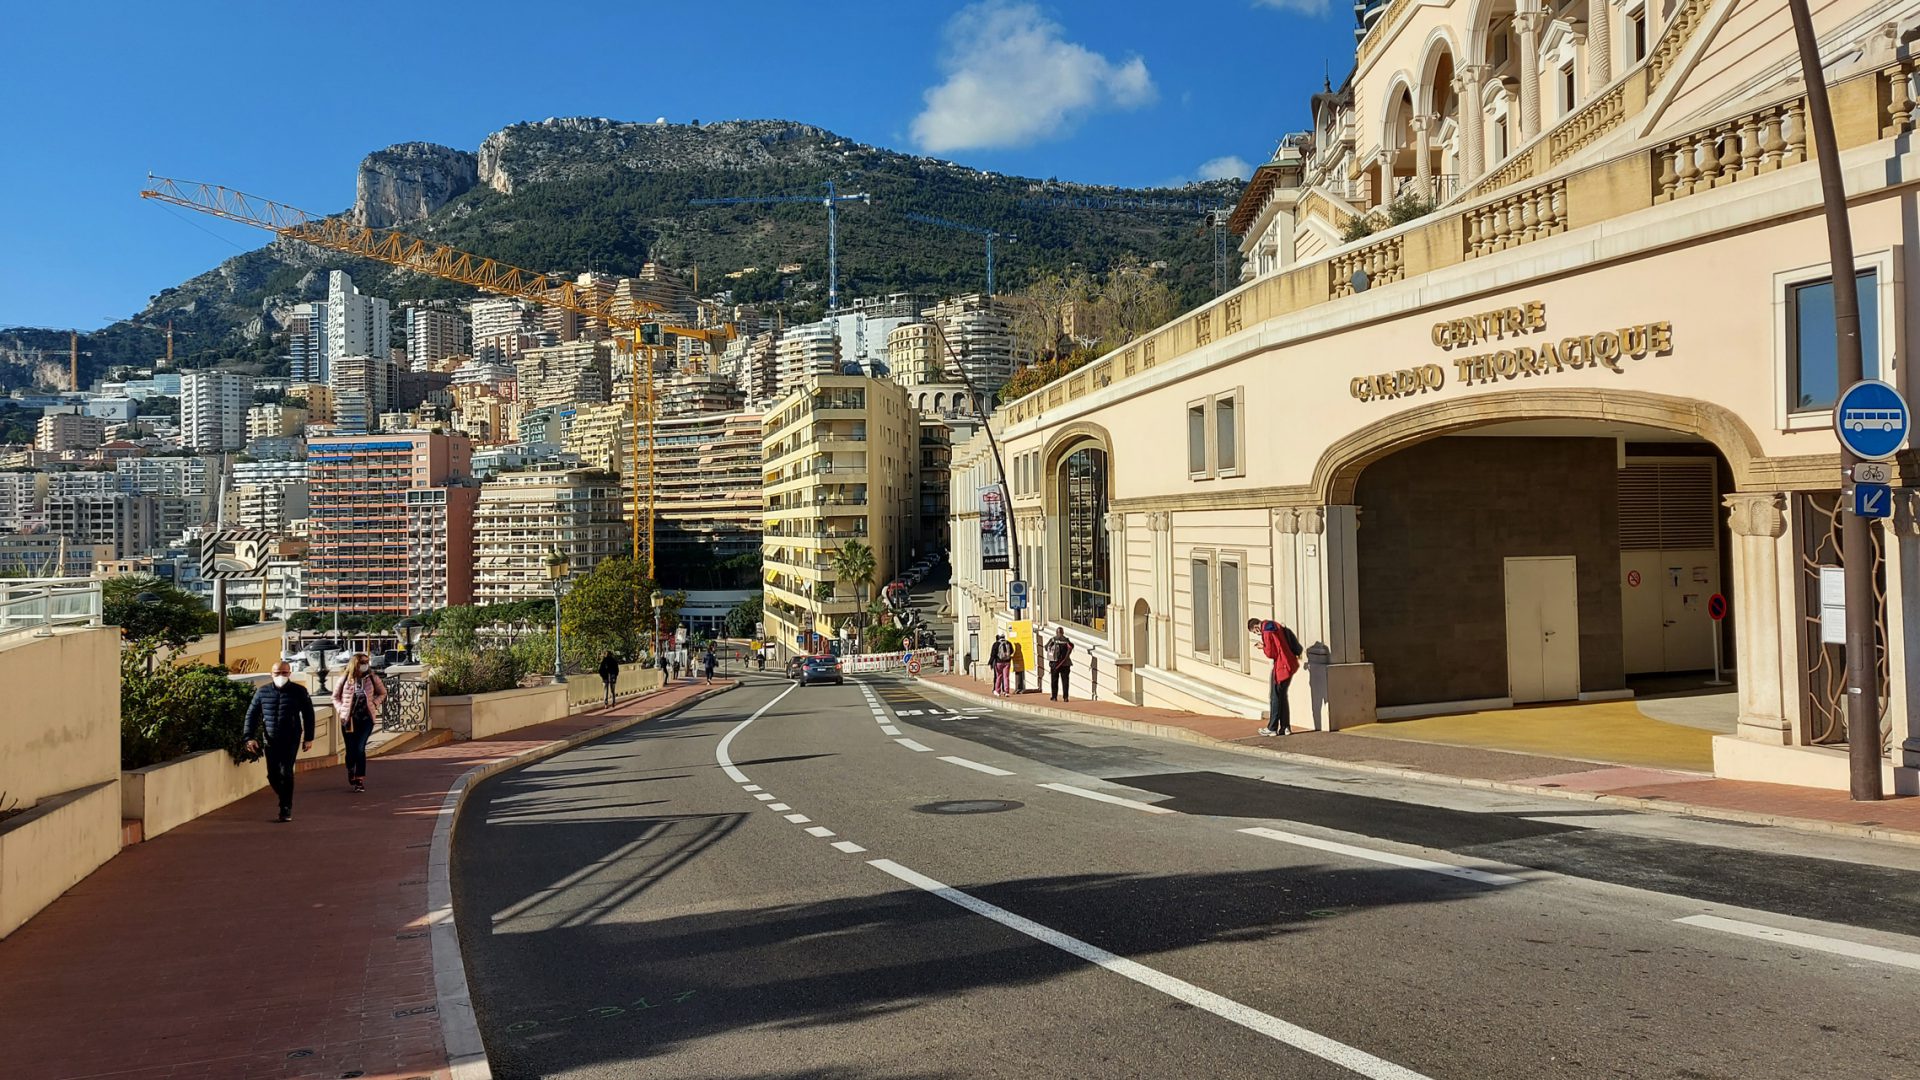 A Sprint Race in Monaco? F1 Driver's Crazy Idea to make Monaco More Fun